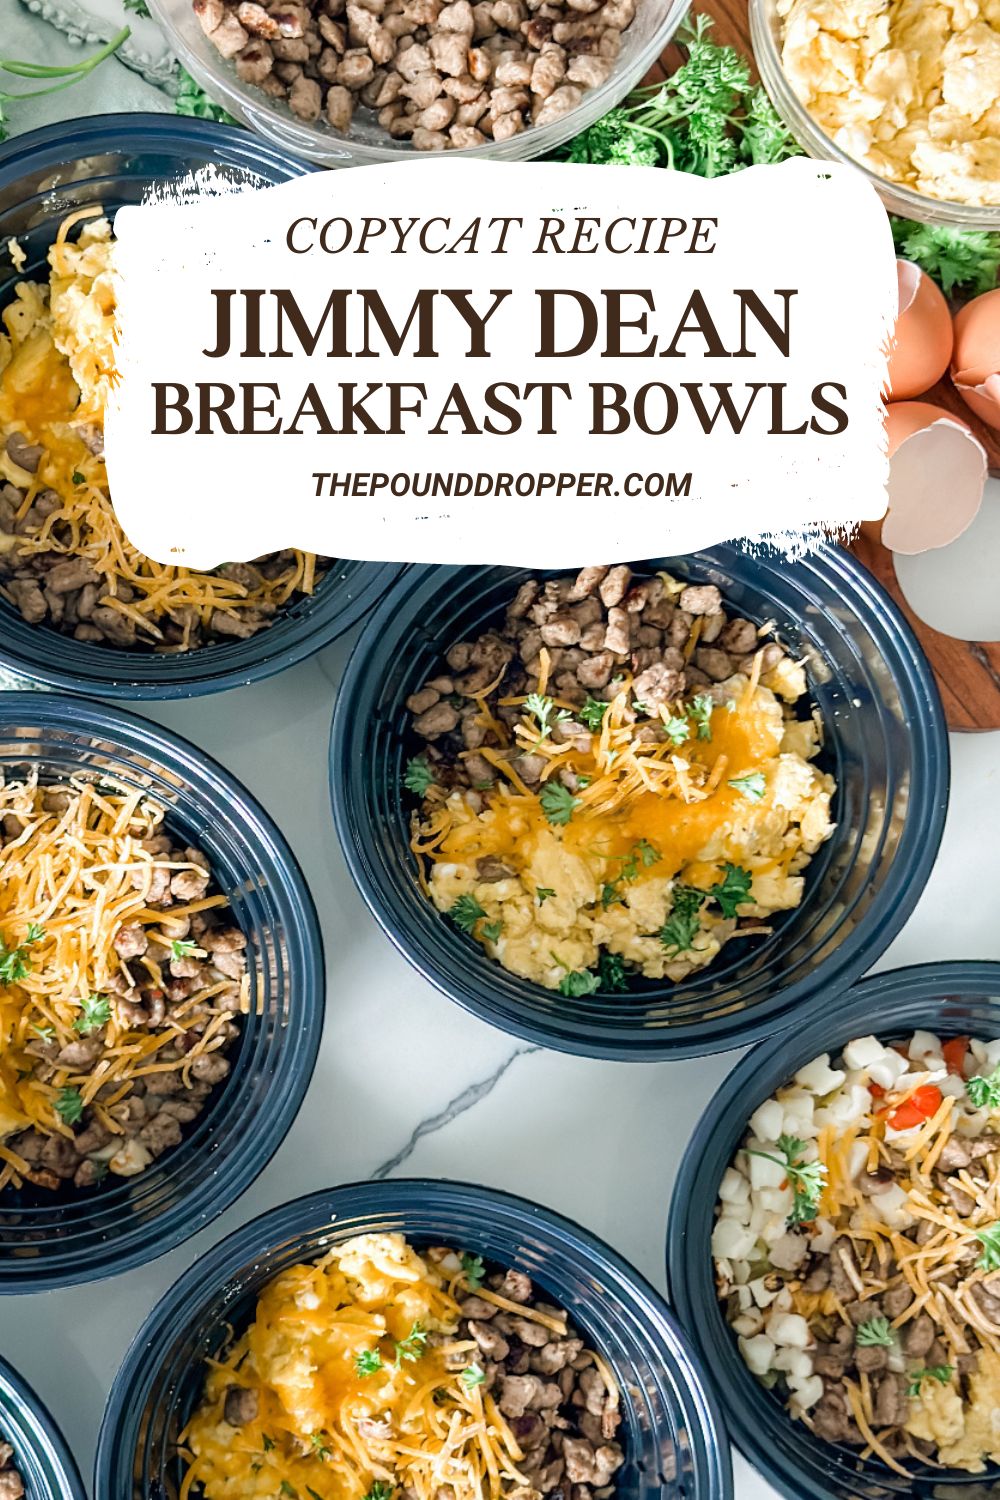 Jimmy Dean Copycat Breakfast Bowls via @pounddropper